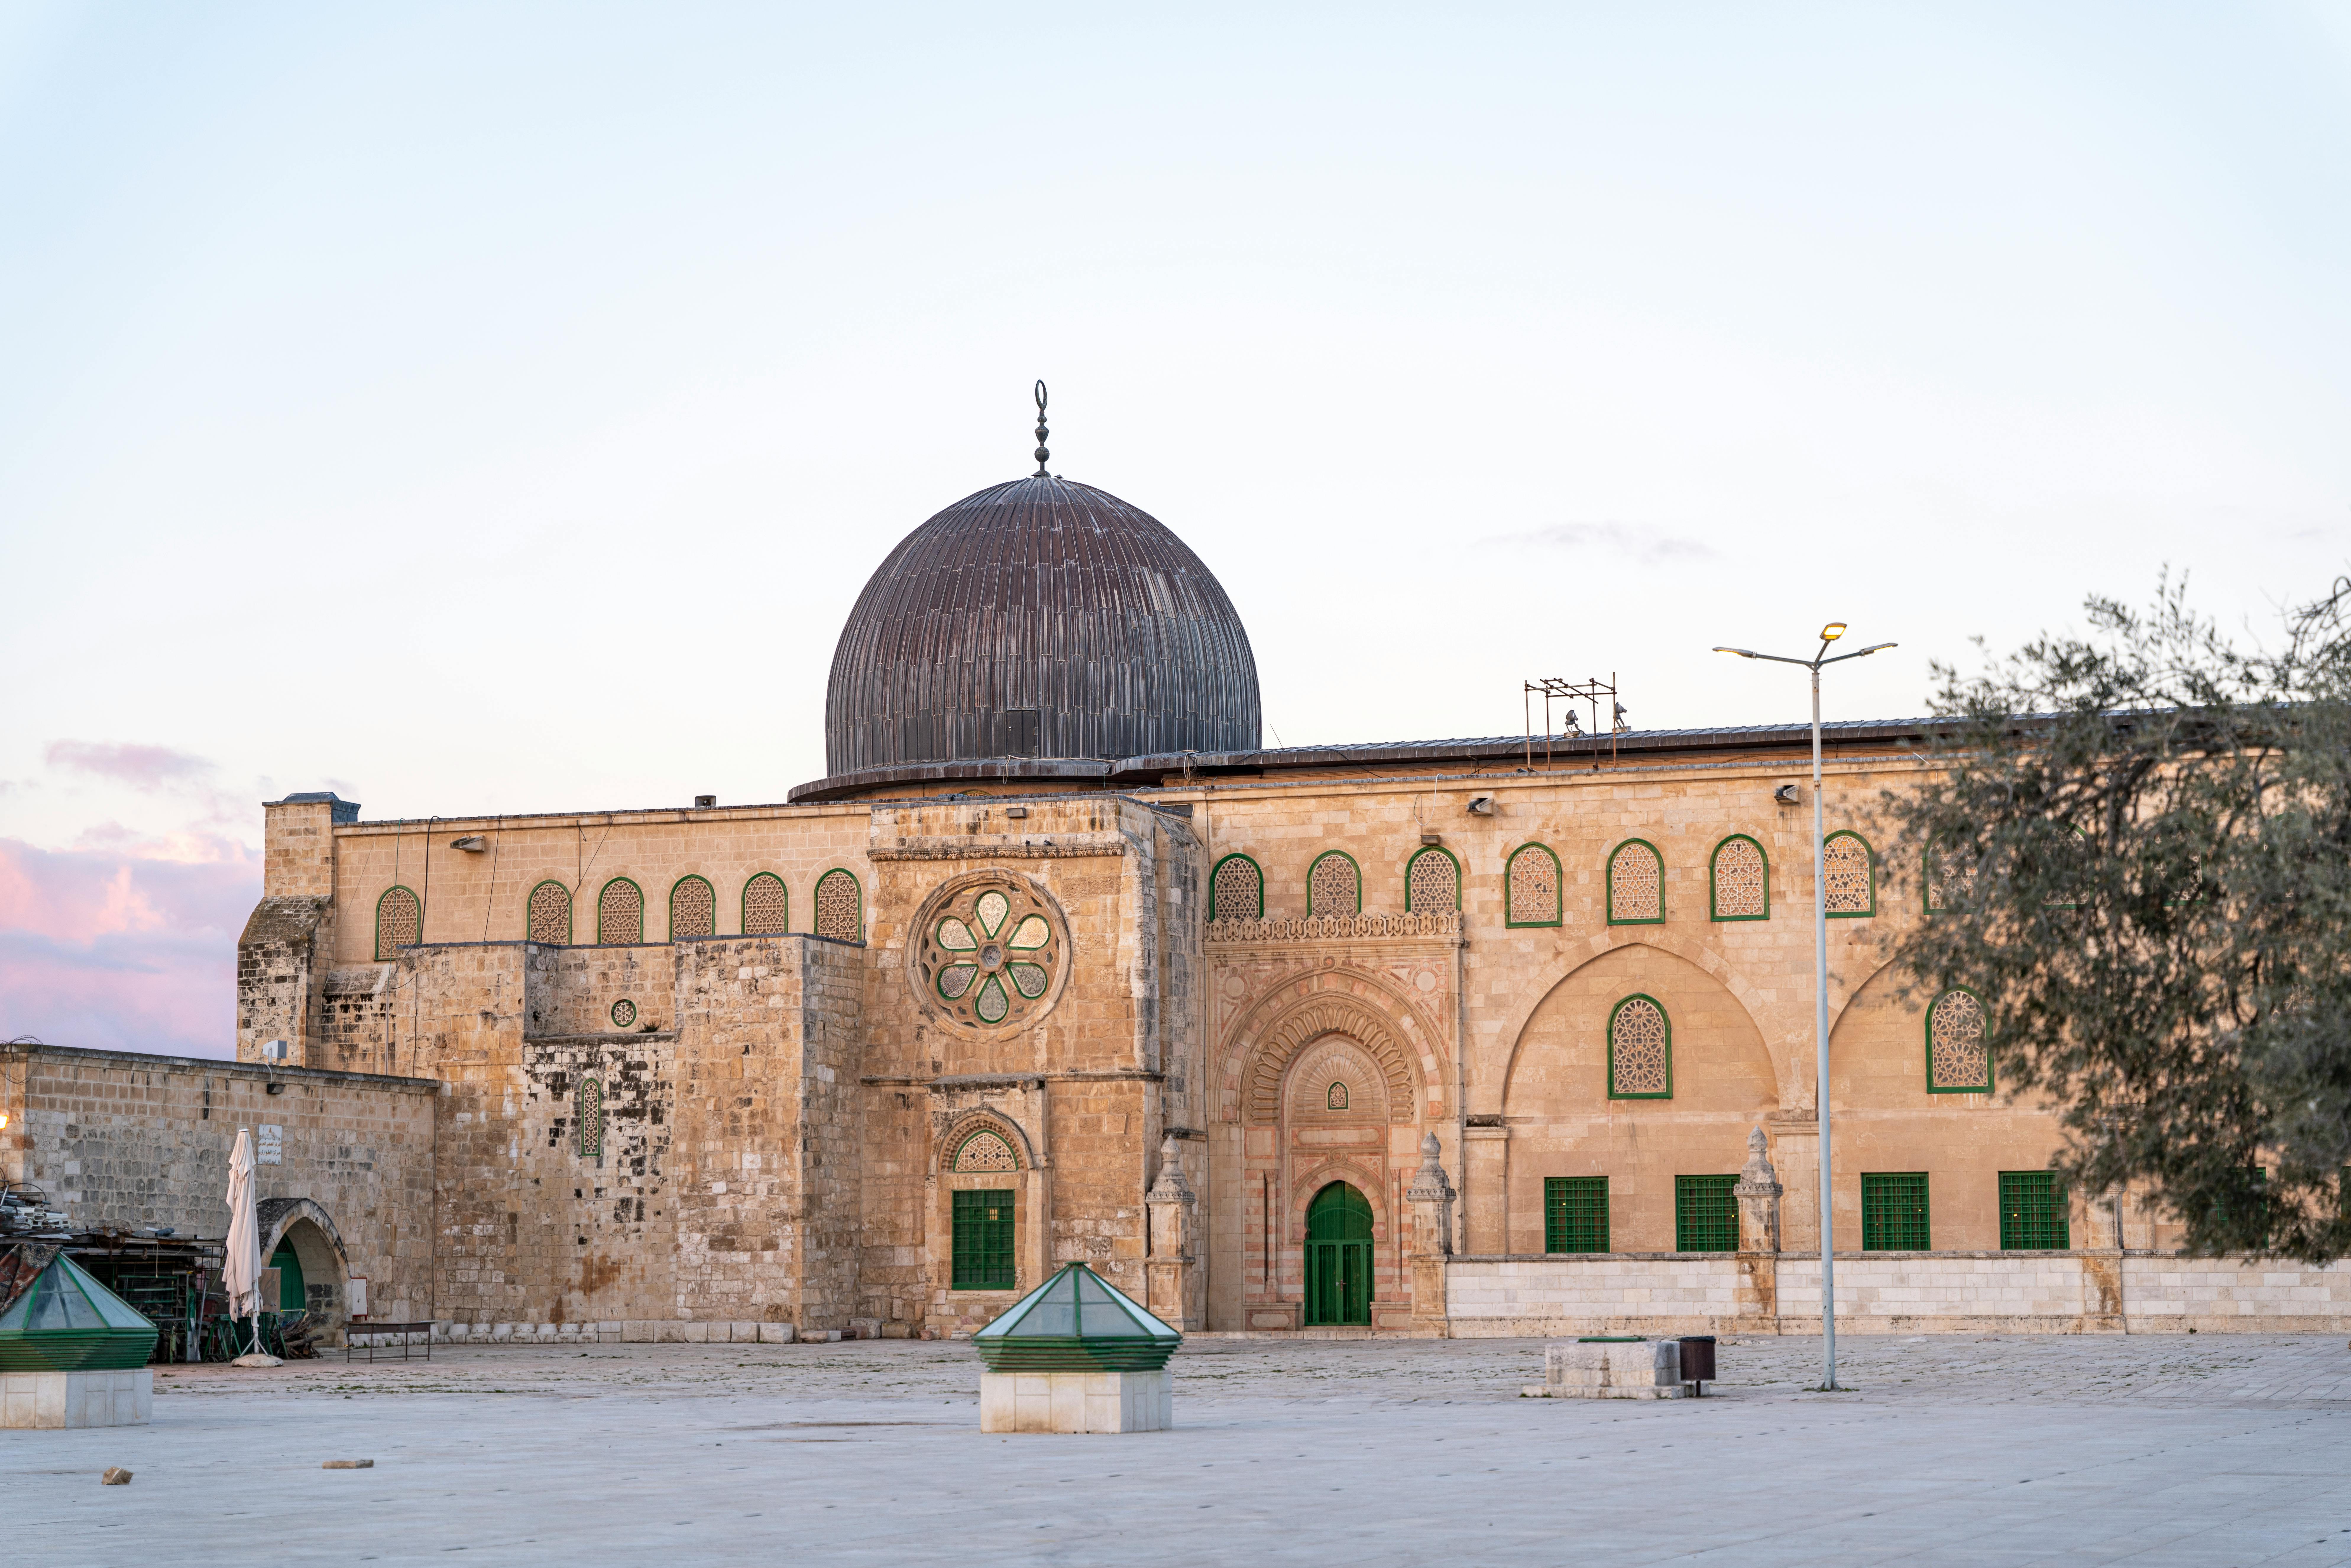 Al Aqsa Photos, Download The BEST Free Al Aqsa Stock Photos & HD Images